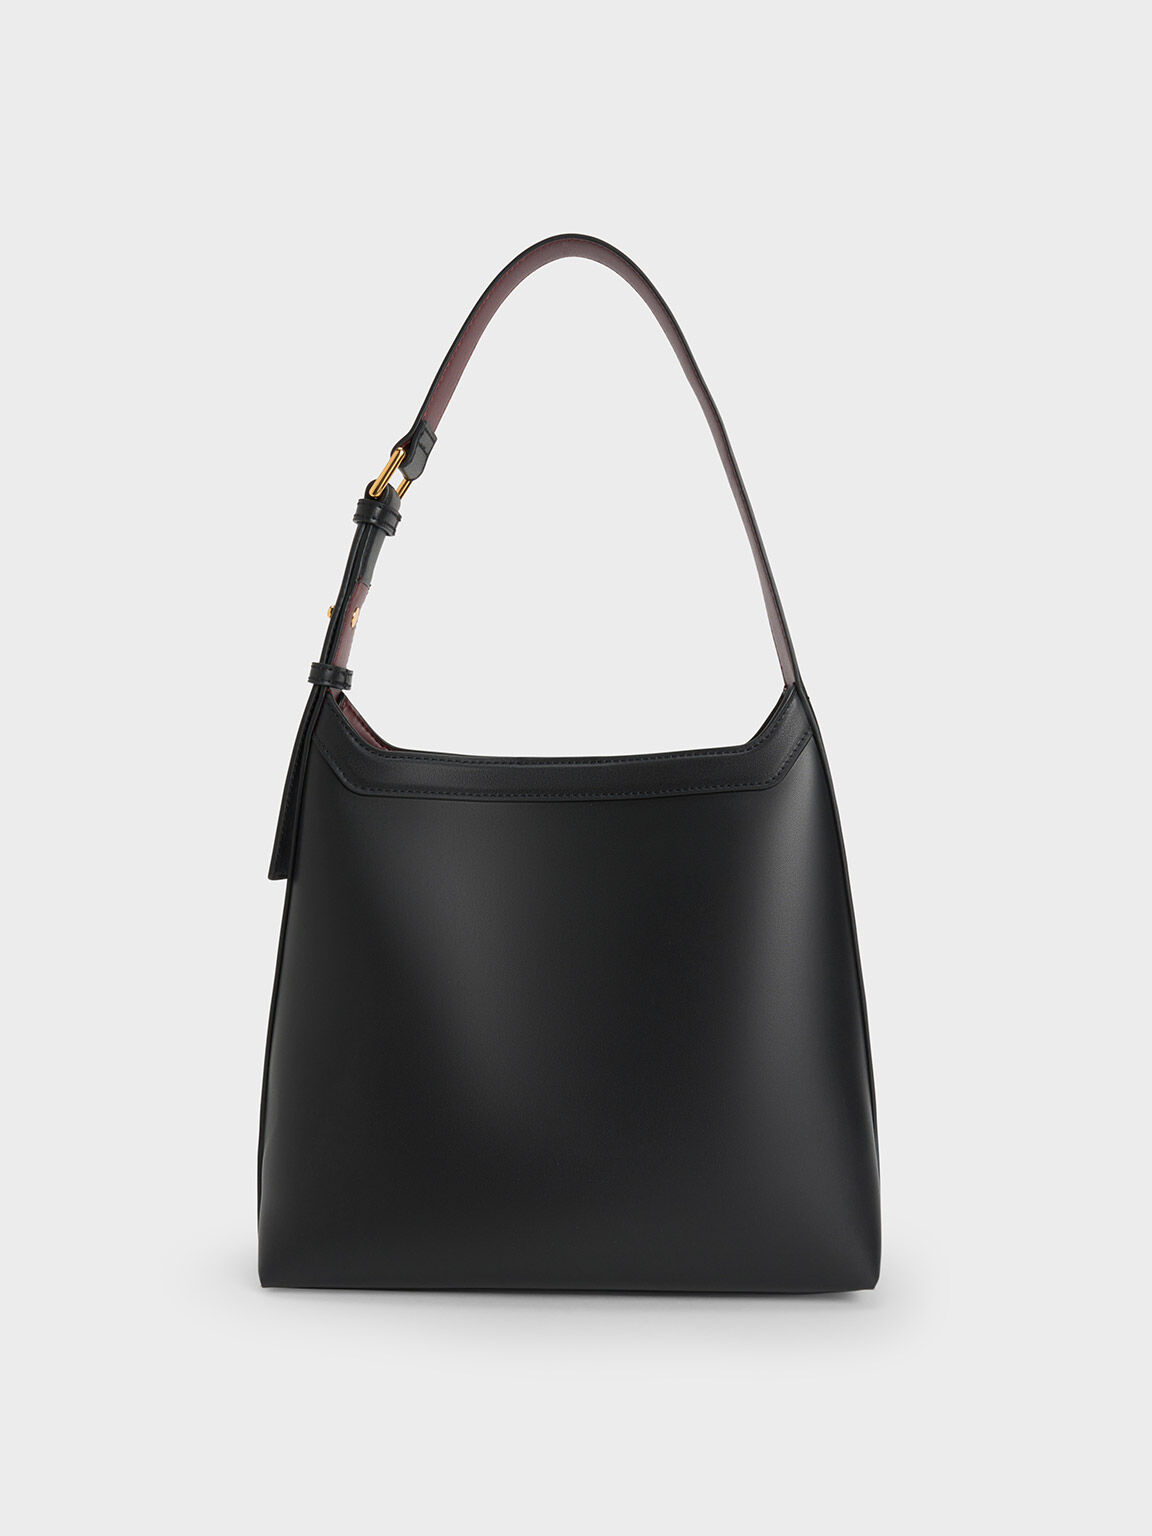 Leona Large Hobo Bag, Black, hi-res